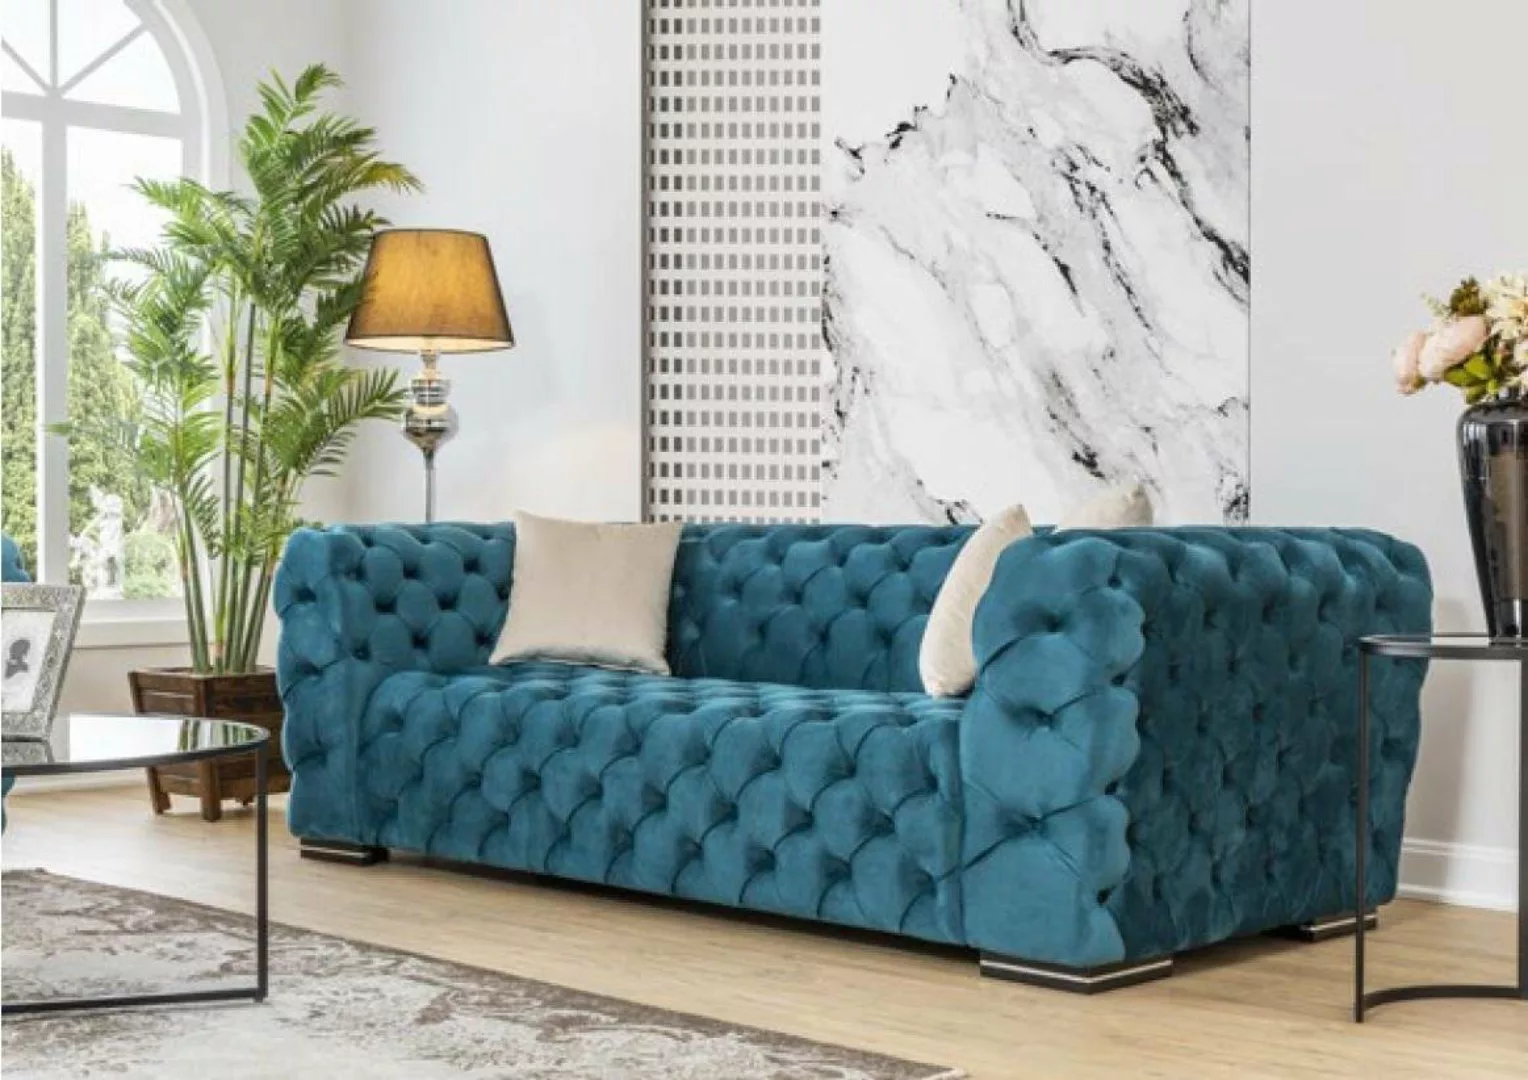 JVmoebel 4-Sitzer Chesterfield Sofa 4 Sitz Design Wohnzimmer Polster Holz P günstig online kaufen